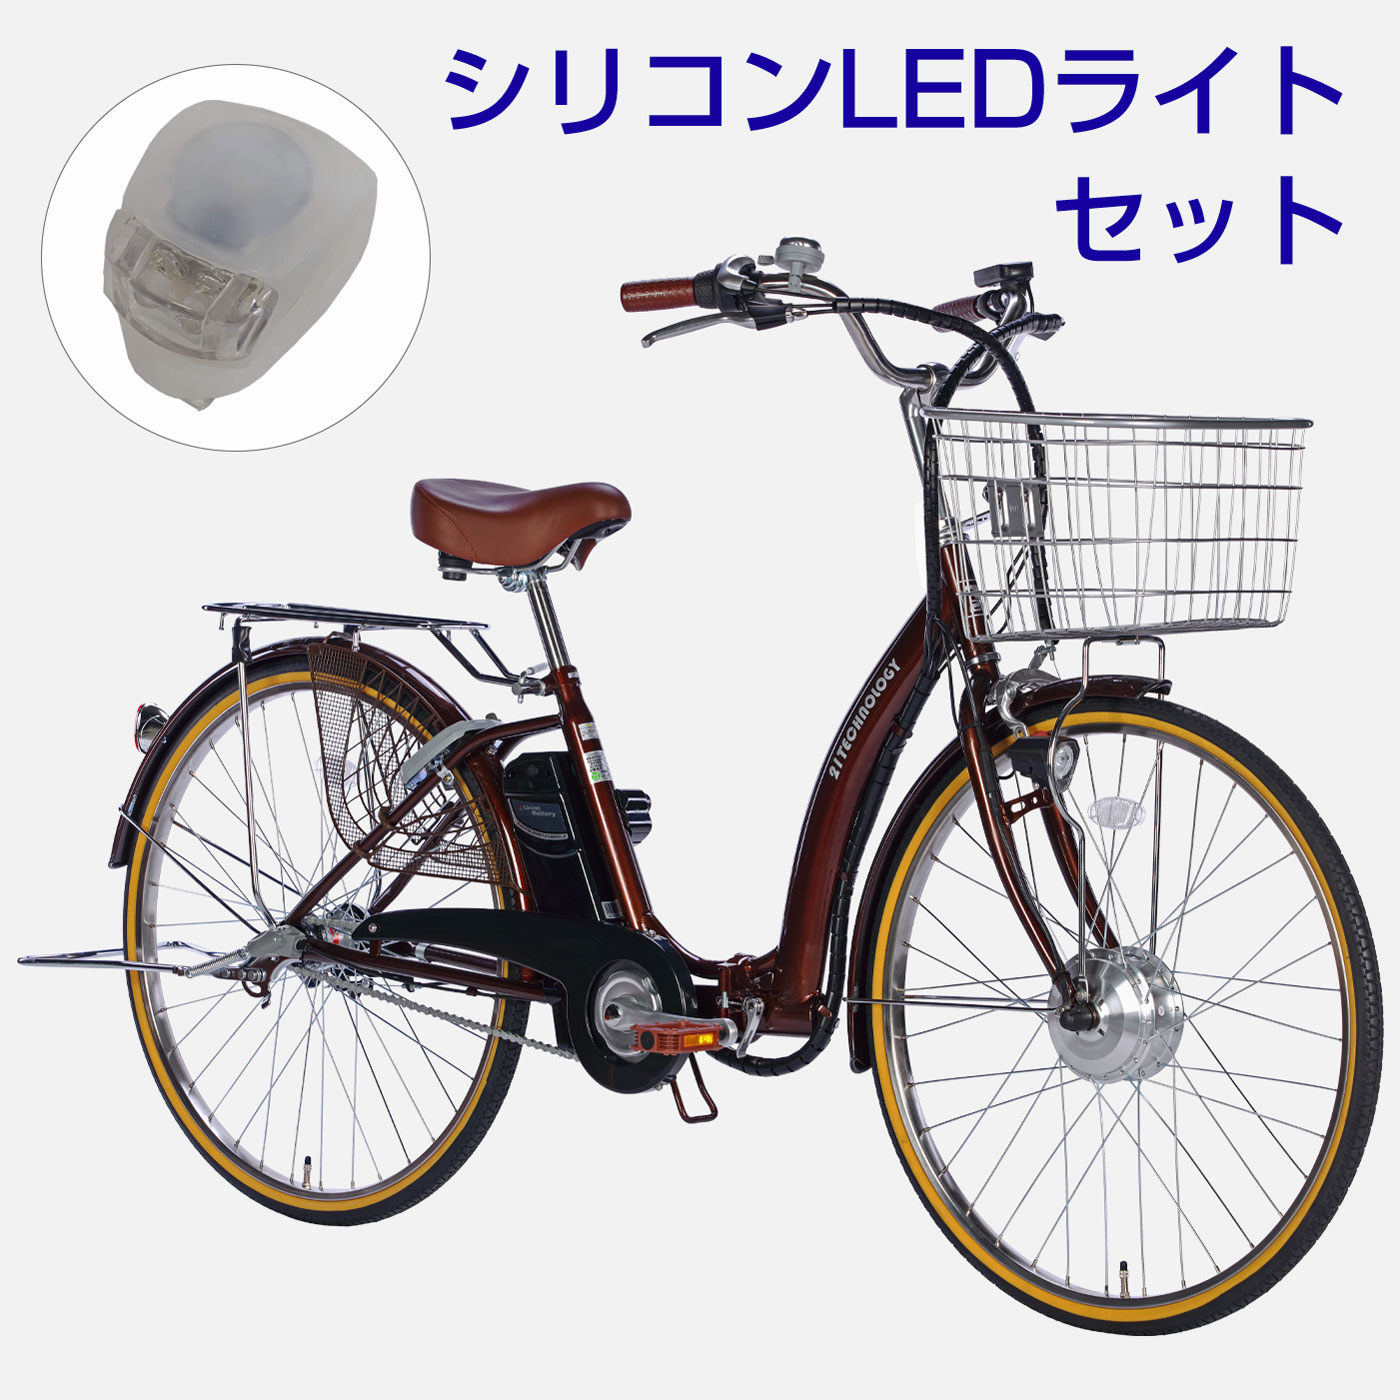 1都7県限定] 電動アシスト自転車 DA243 + シリコンLEDライトセット 